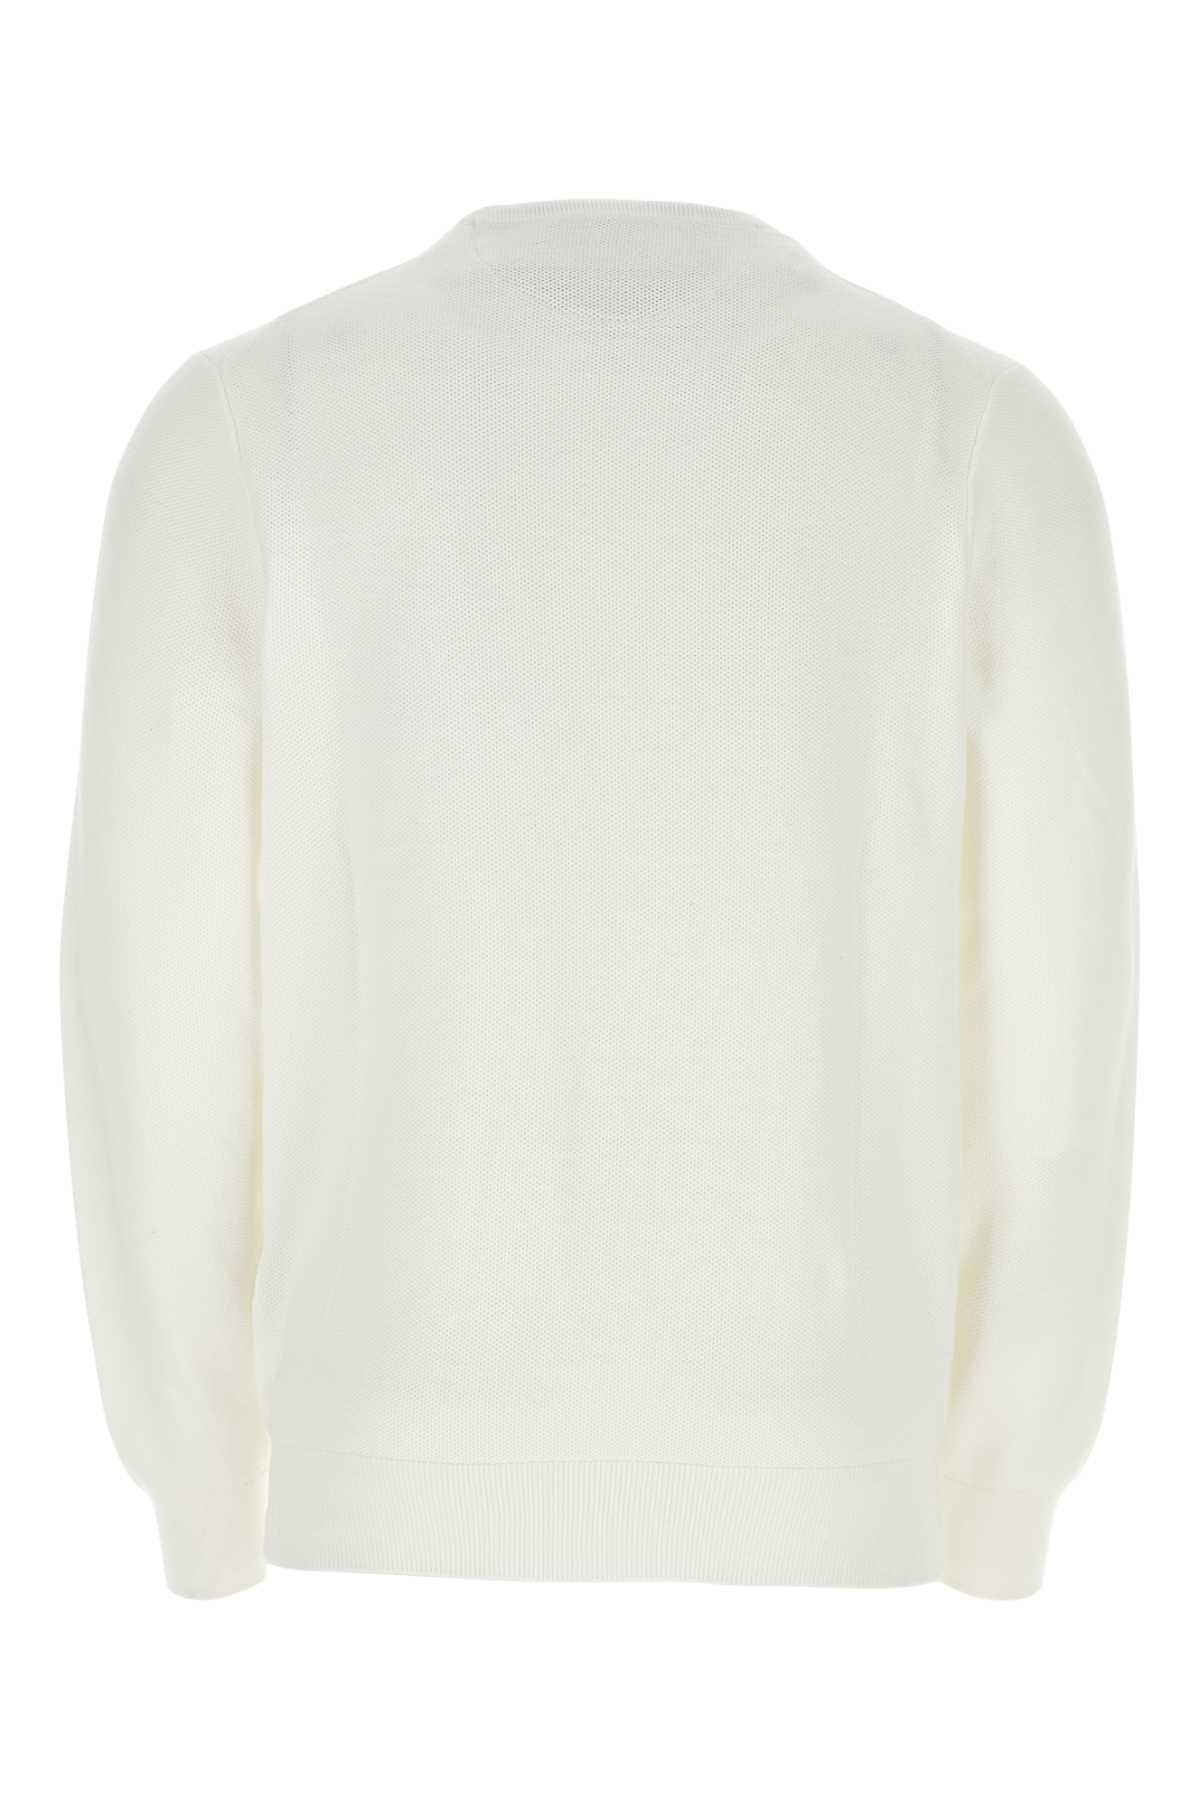 Polo Ralph Lauren White Cotton Sweater In Multi